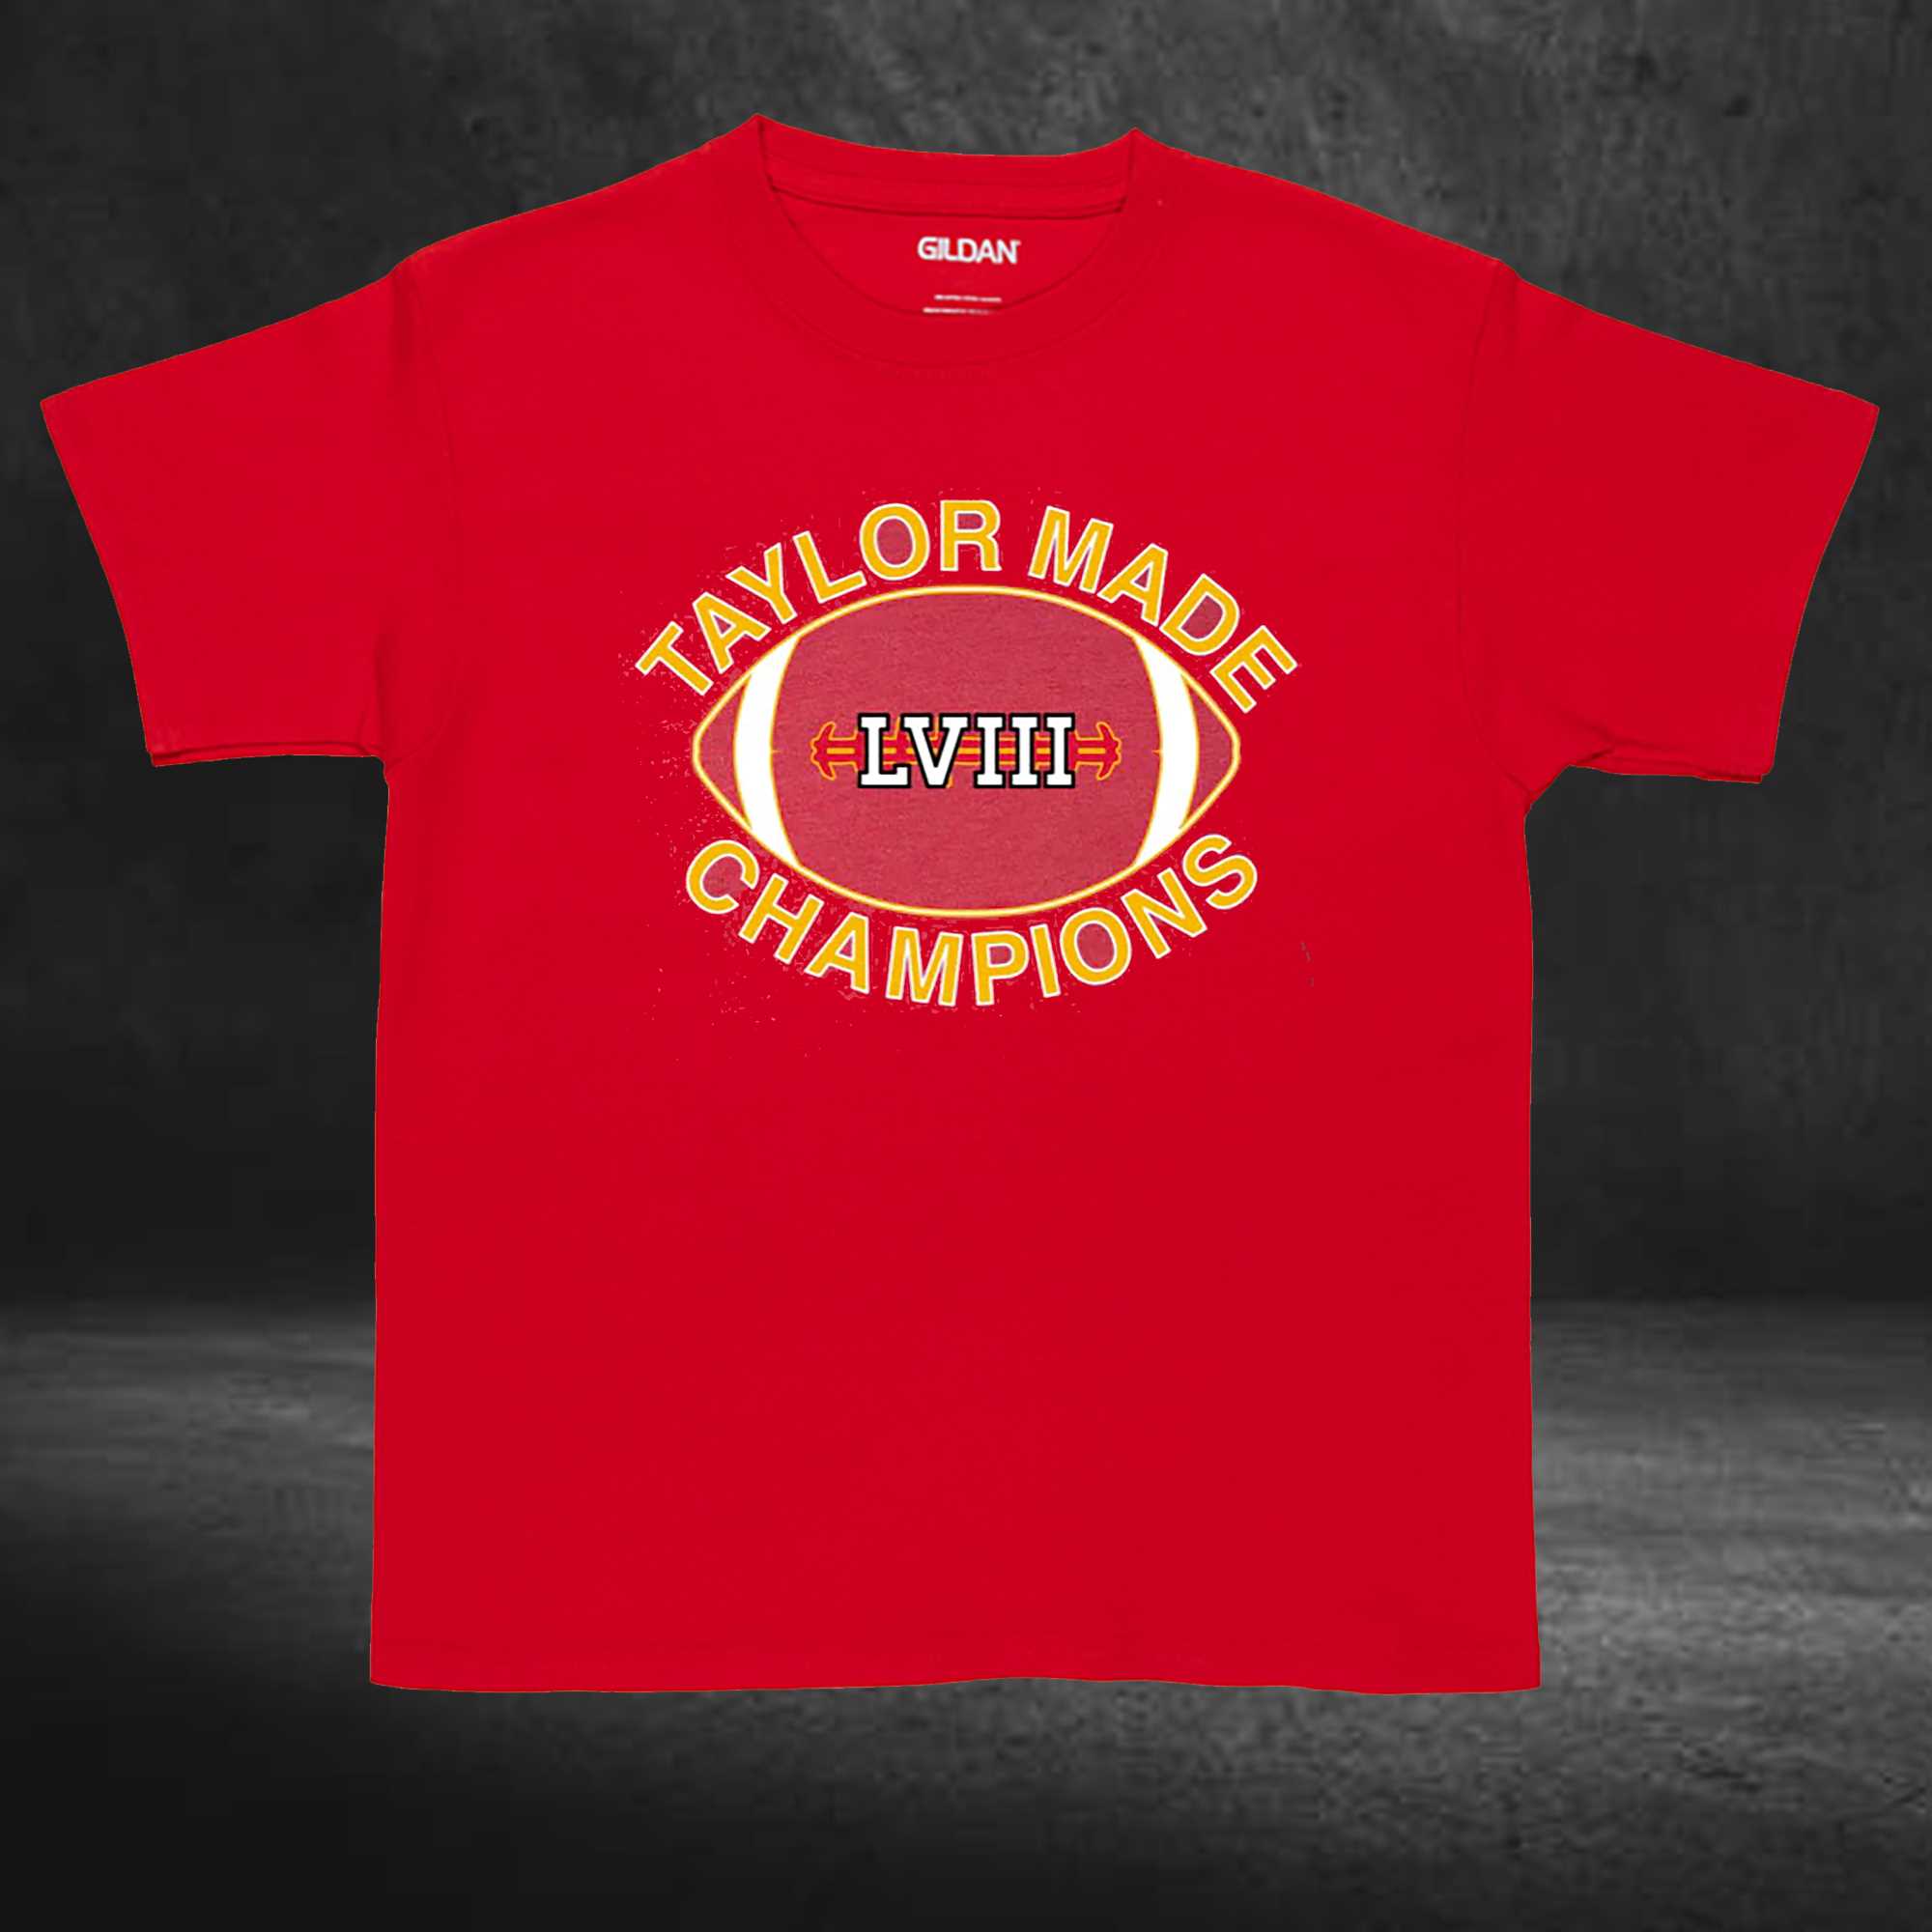 Taylor Made Champions Shirt 